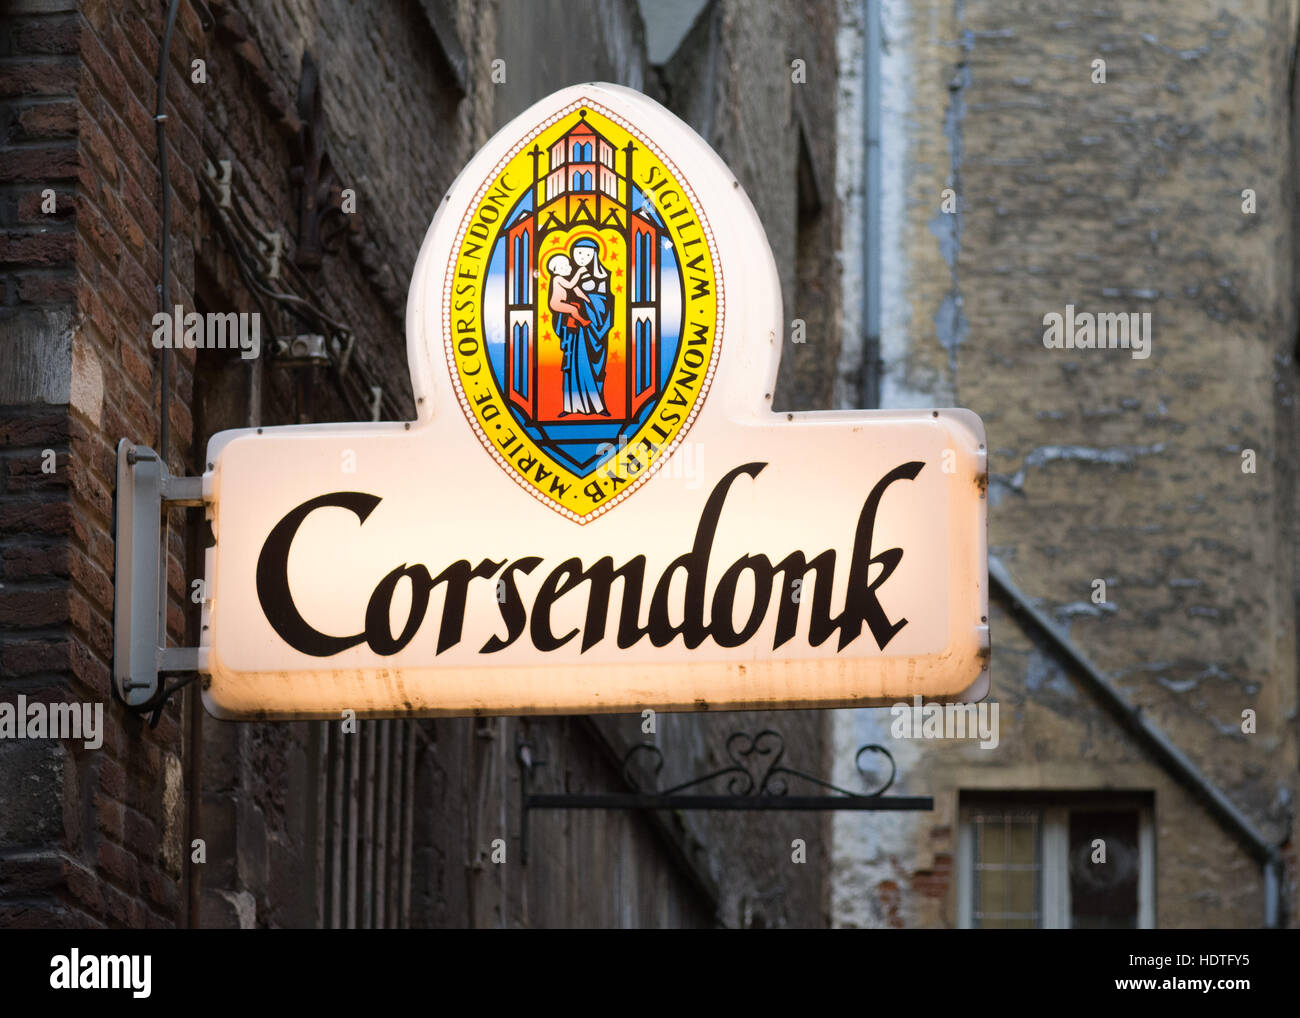 Corsendonk belgium beer sign in Brussels Stock Photo